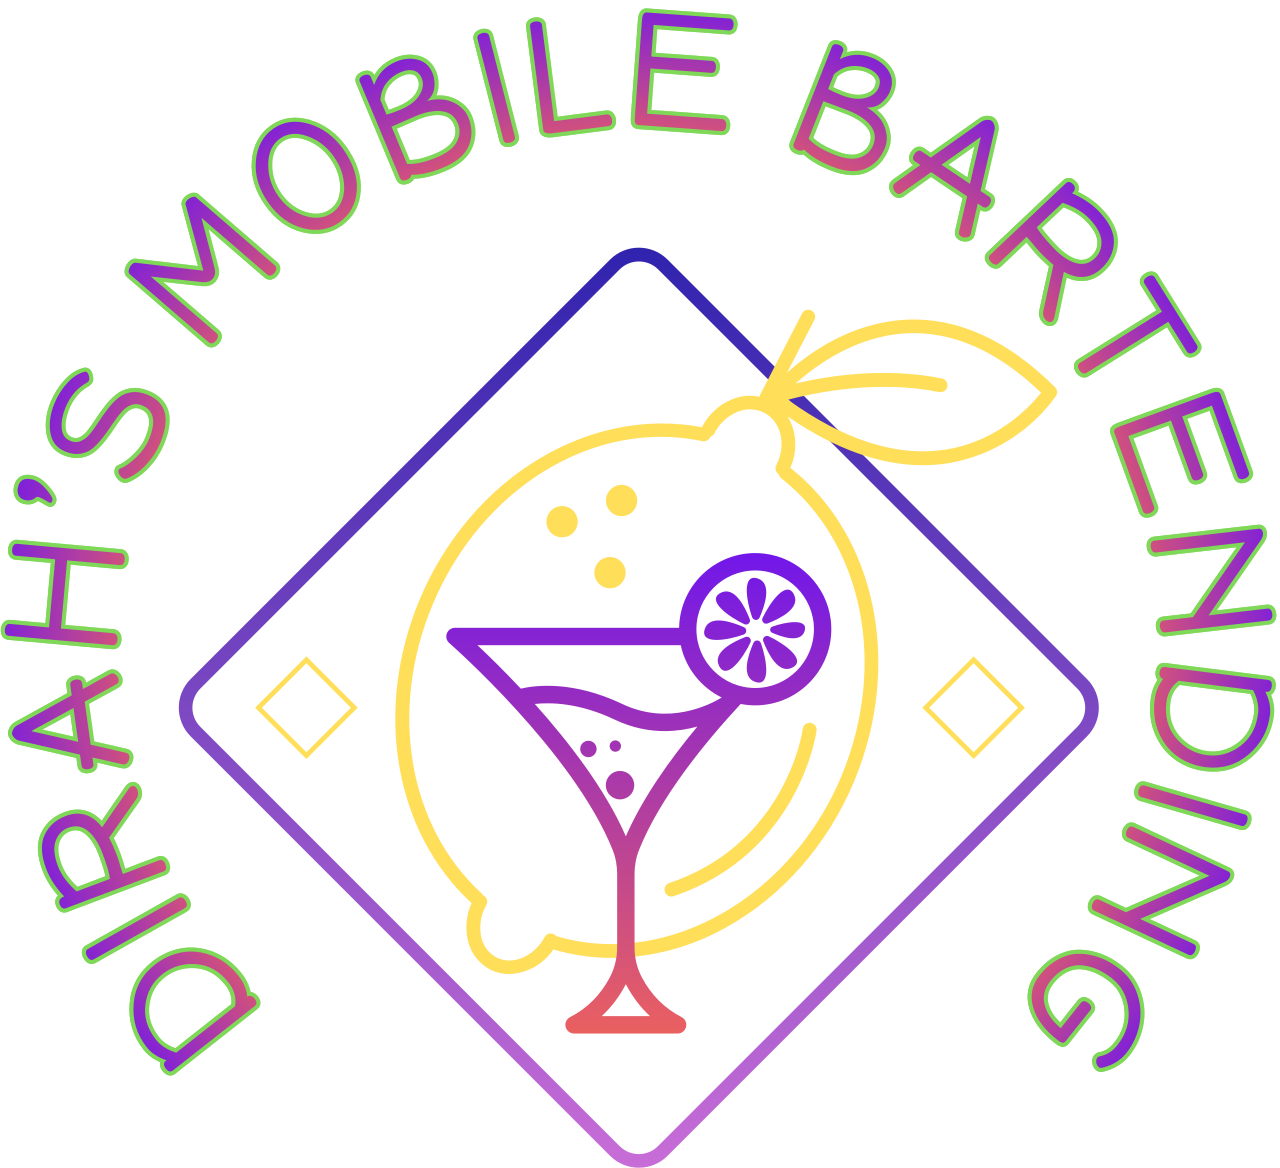 DIRAH’S MOBILE BARTENDING's logo